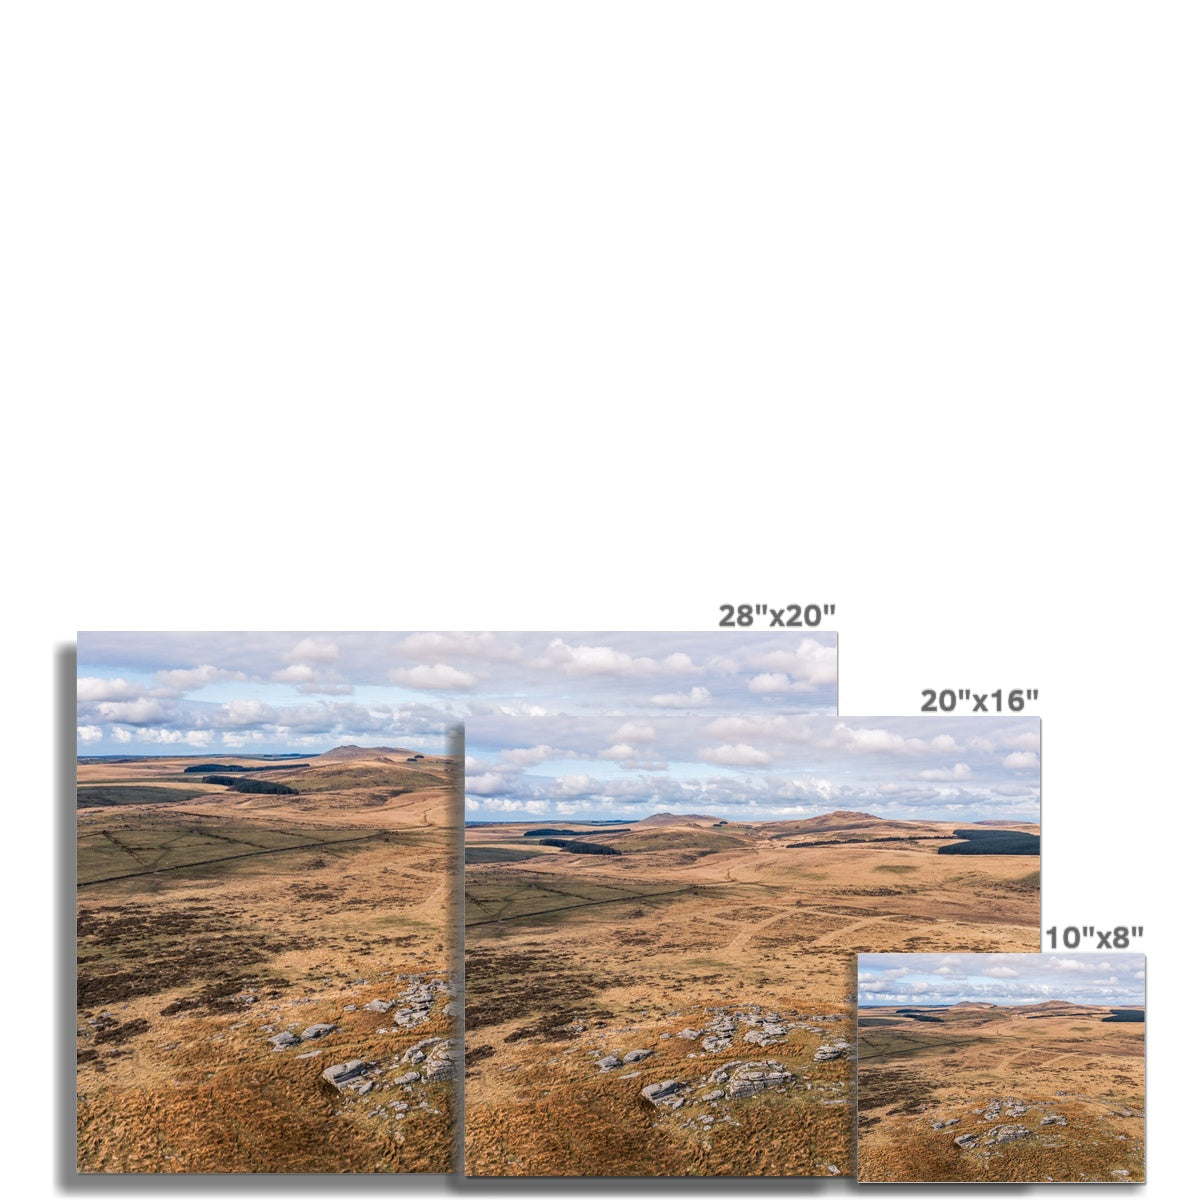 bodmin moor landscape picture sizes